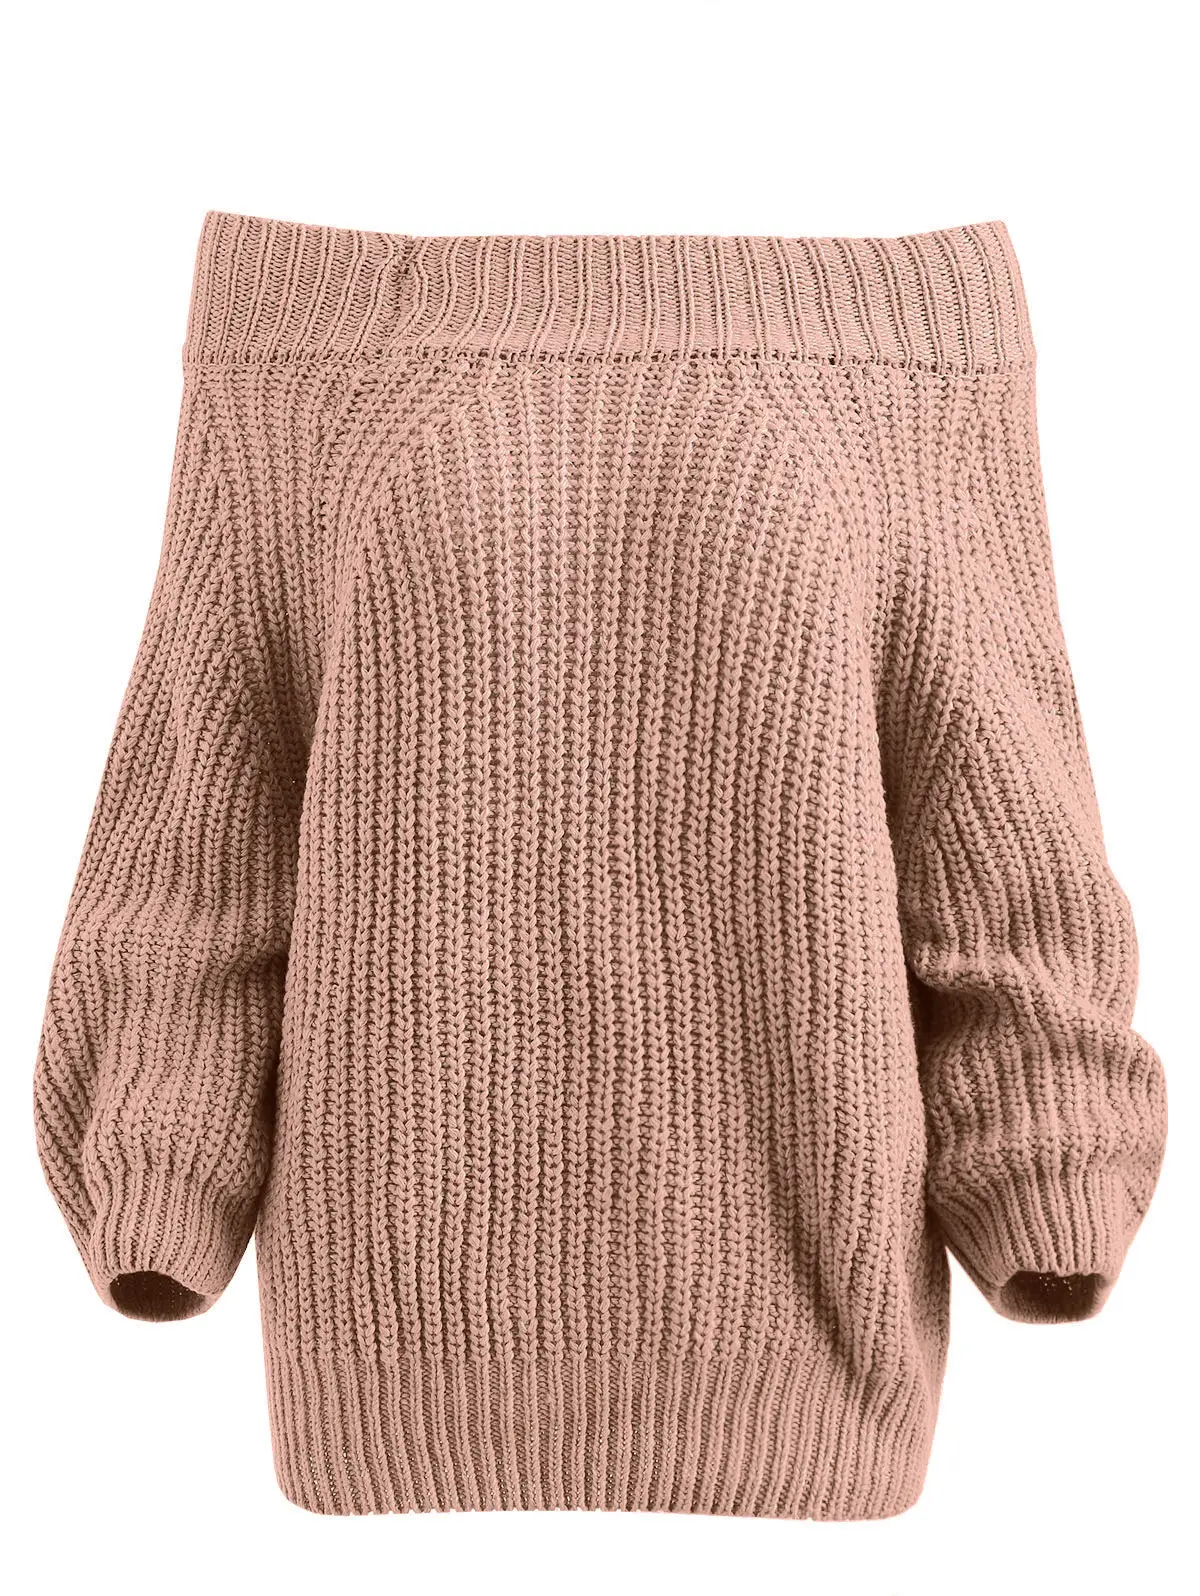 ROSEGAL простой женский свитер с открытыми плечами, рукав реглан, повседневные однотонные свитера, сексуальная женская одежда, пуловеры, Осень-зима - Цвет: Light Brown